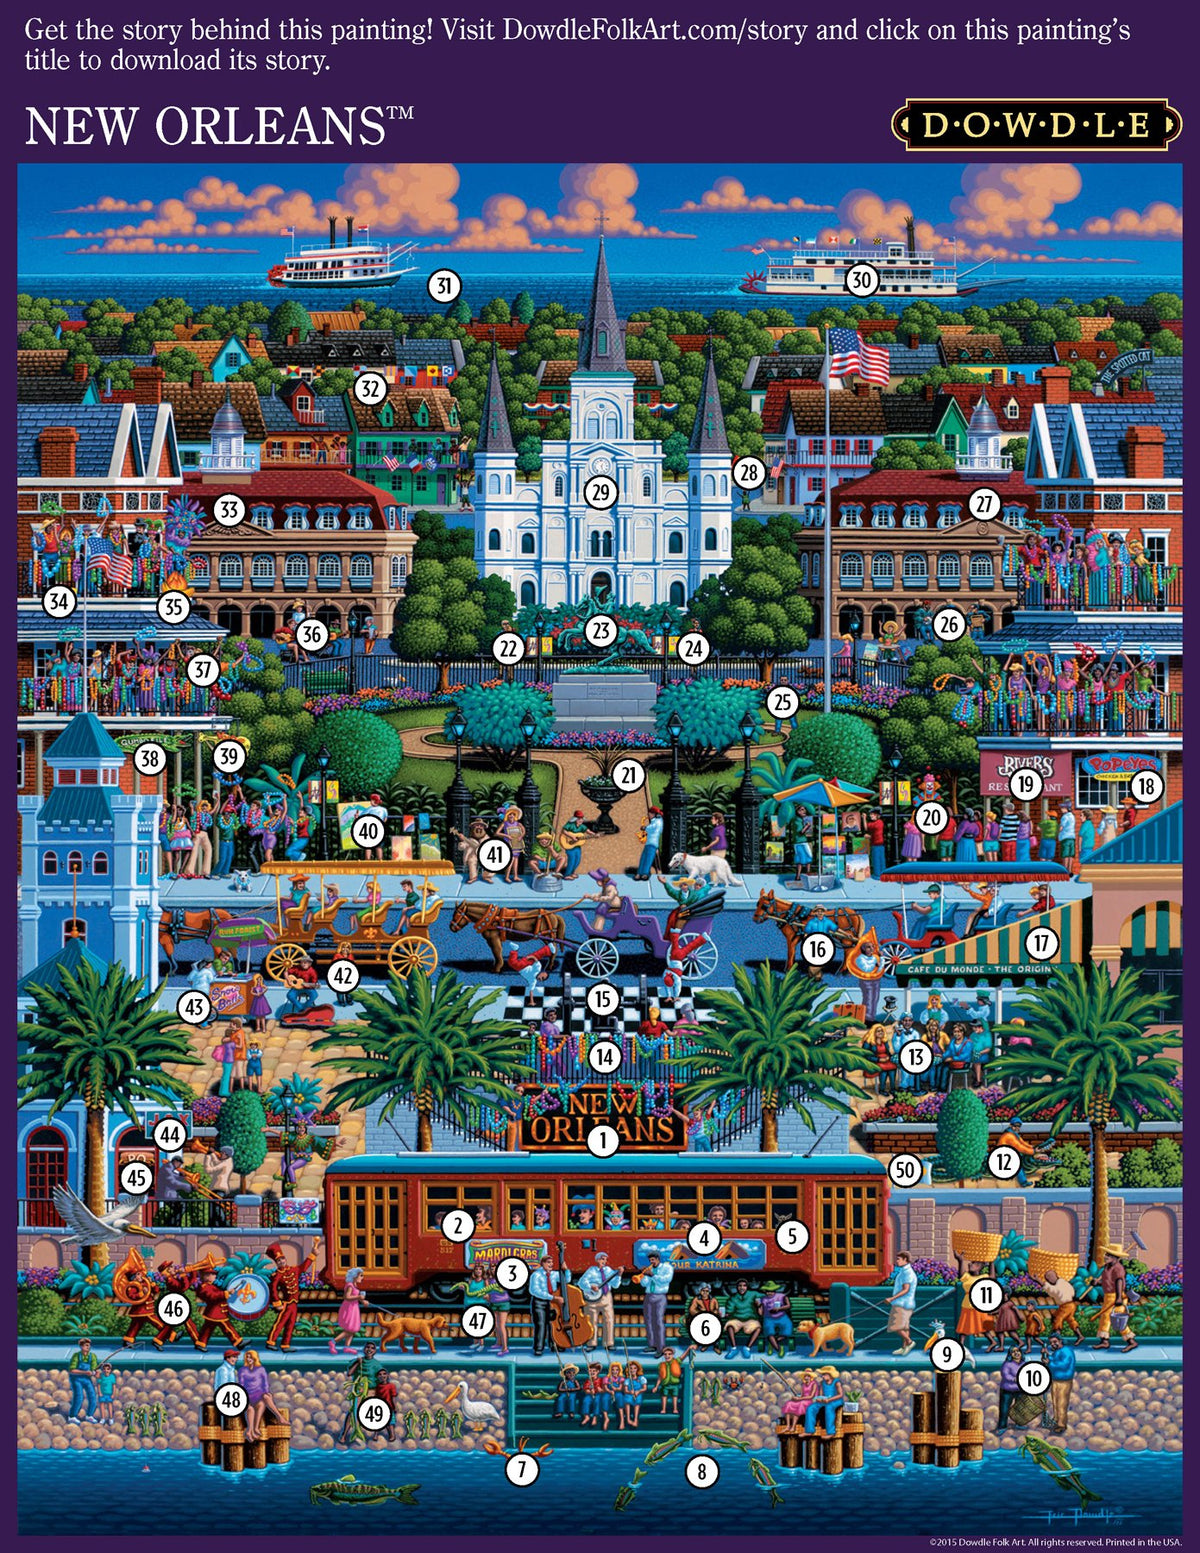 New Orleans 500 Piece Puzzle - Puzzlicious.com